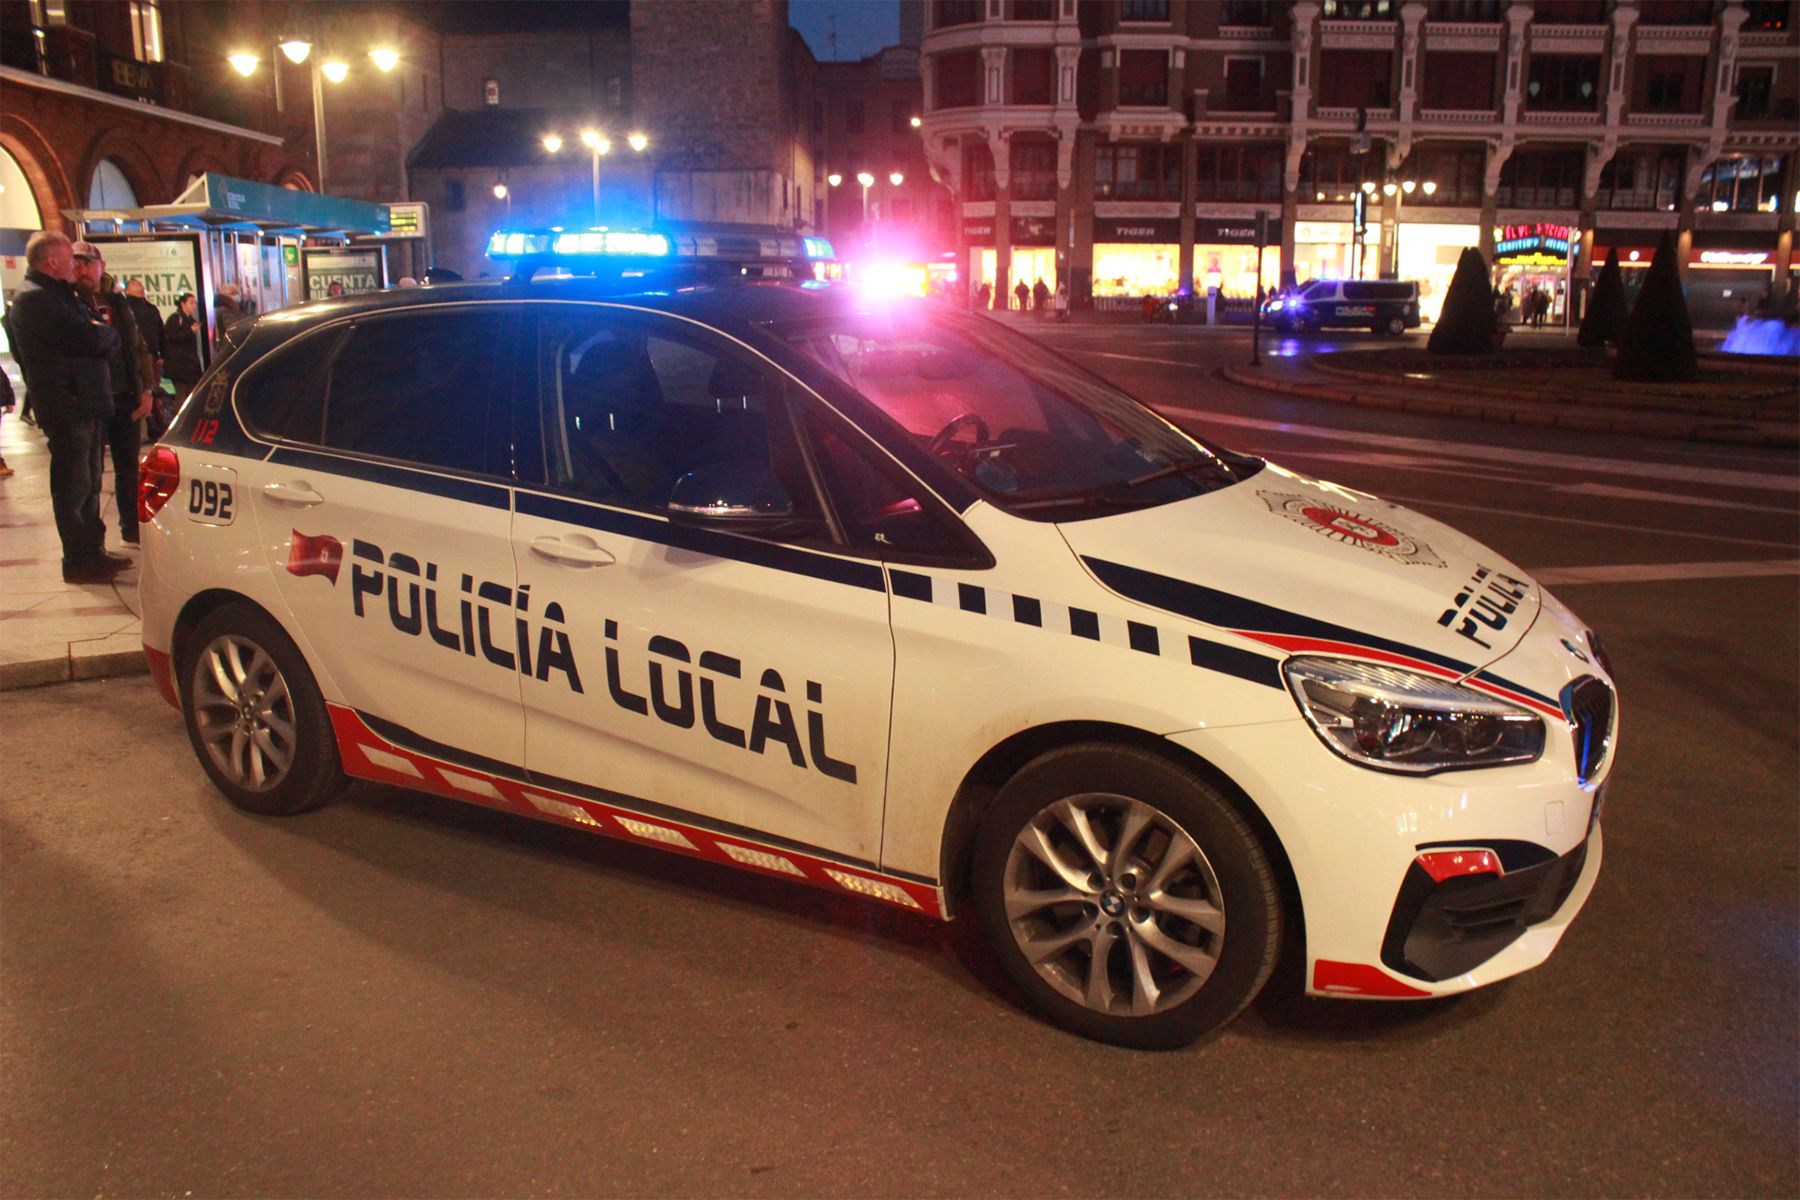 La Policía Local de León interviene en dos accidentes causados por los efectos de la ingesta de alcohol